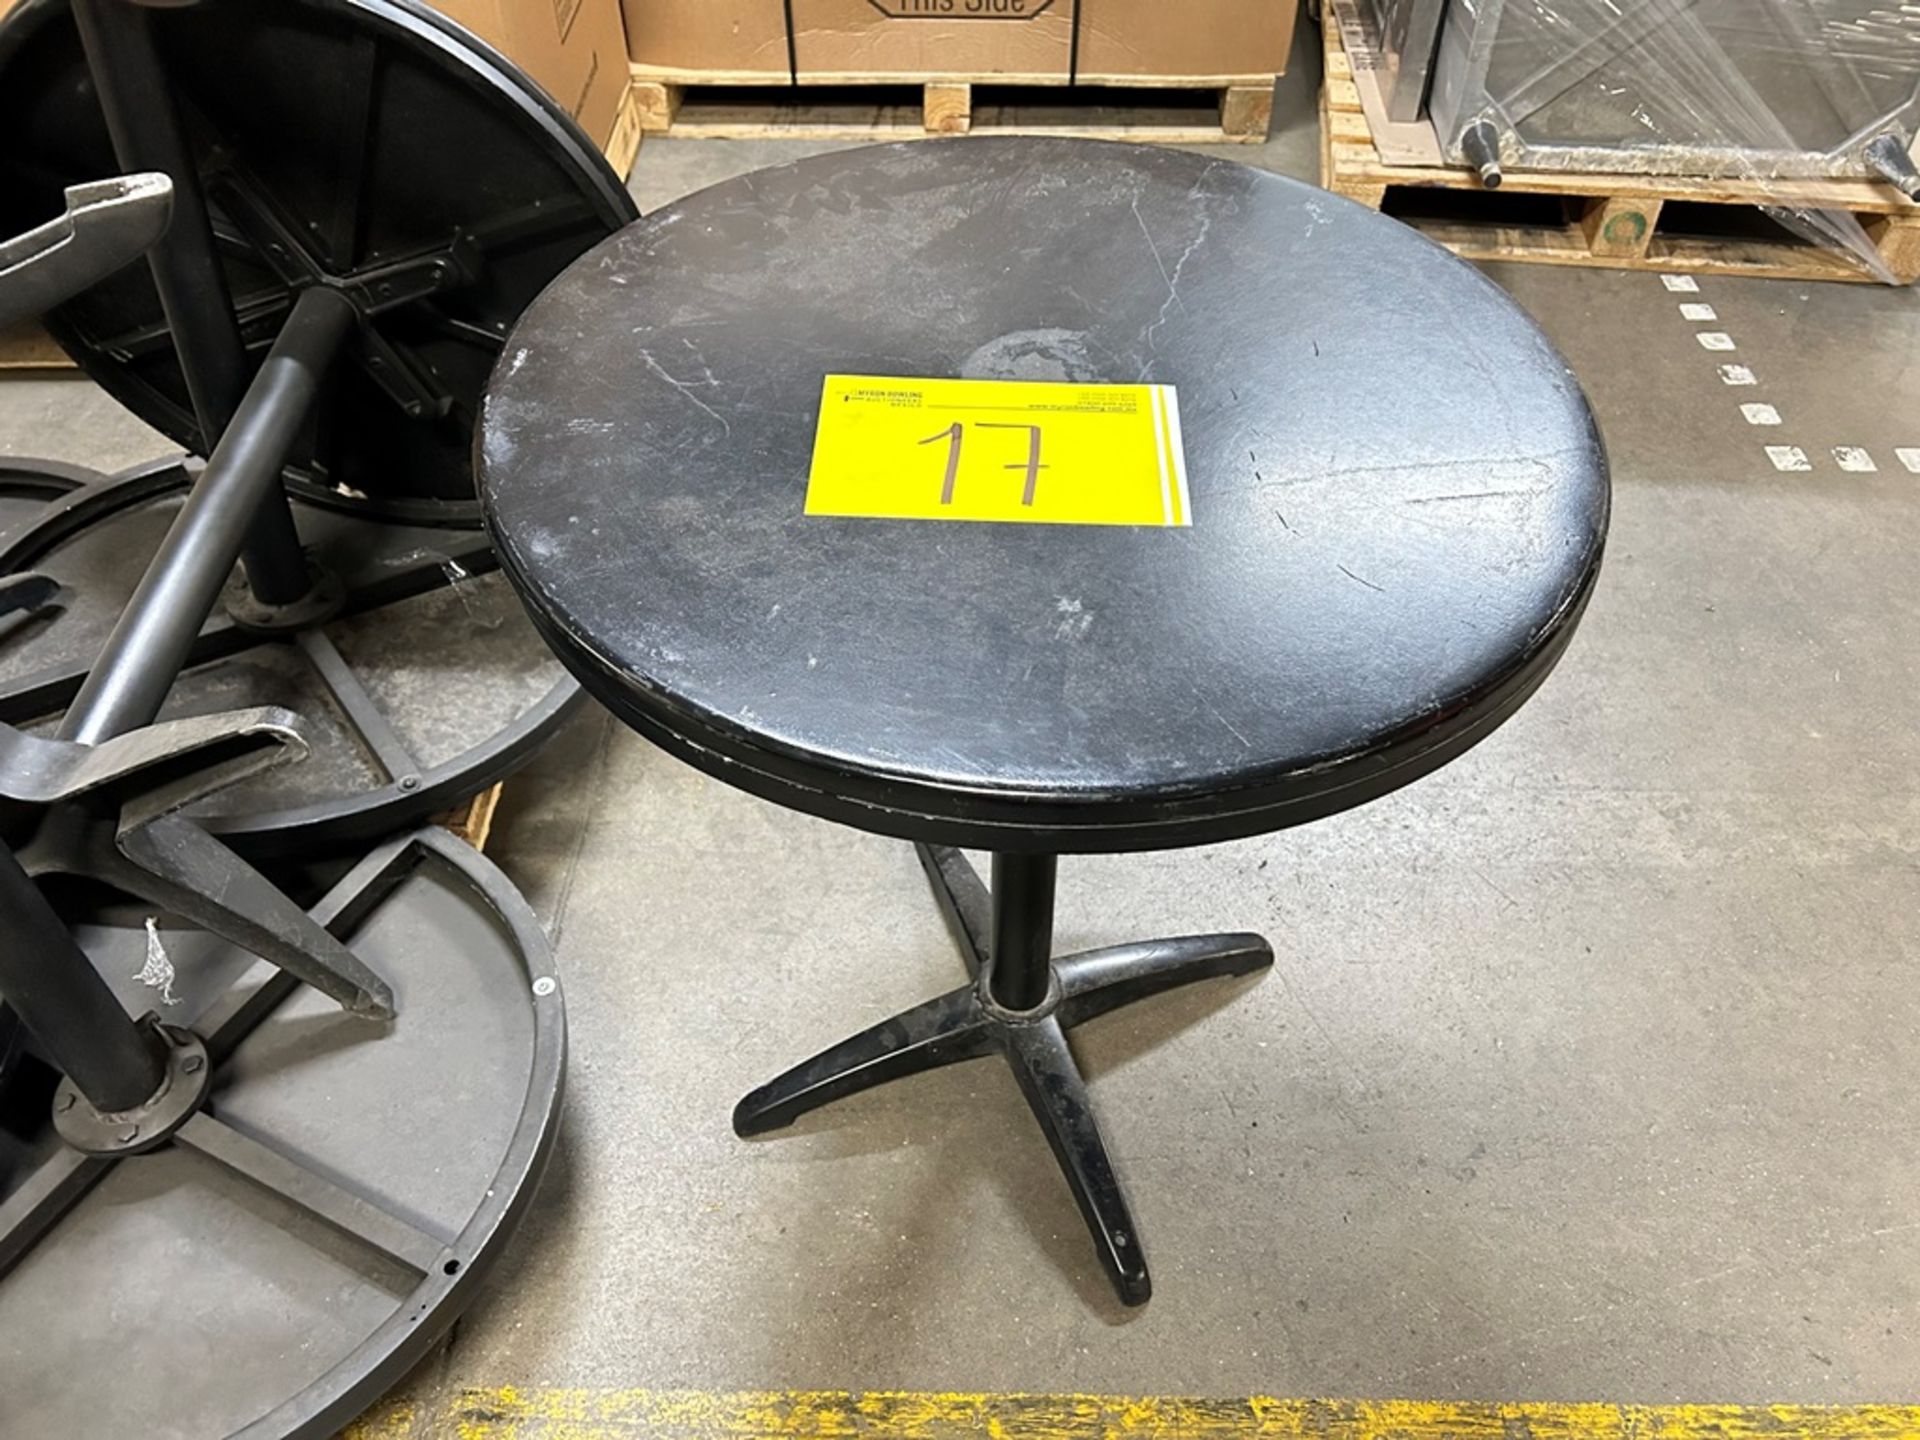 Lote de 8 mesas de metal, color negro, medidas 69 cm de diámetro por 75 cm de alto (Equipo usado) - Image 4 of 5